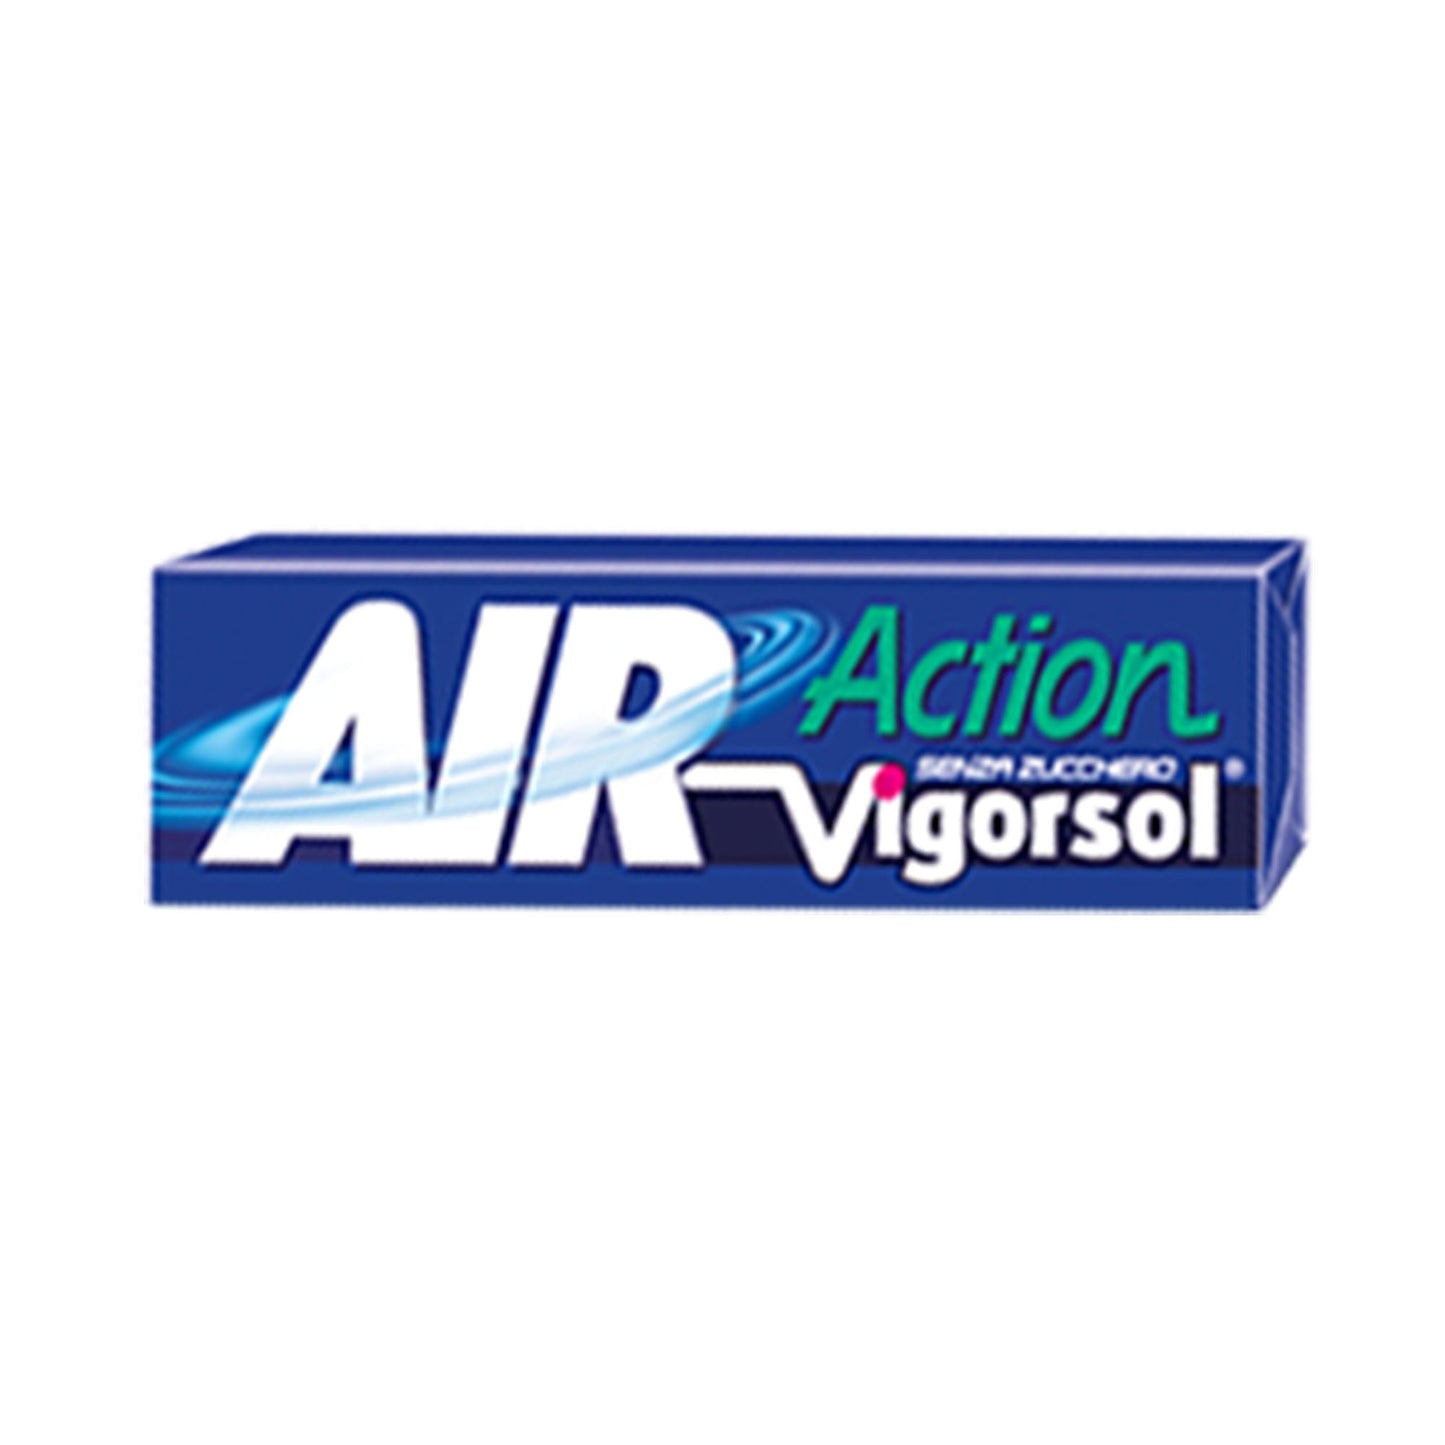 Vigorsol Air Action 13.2G